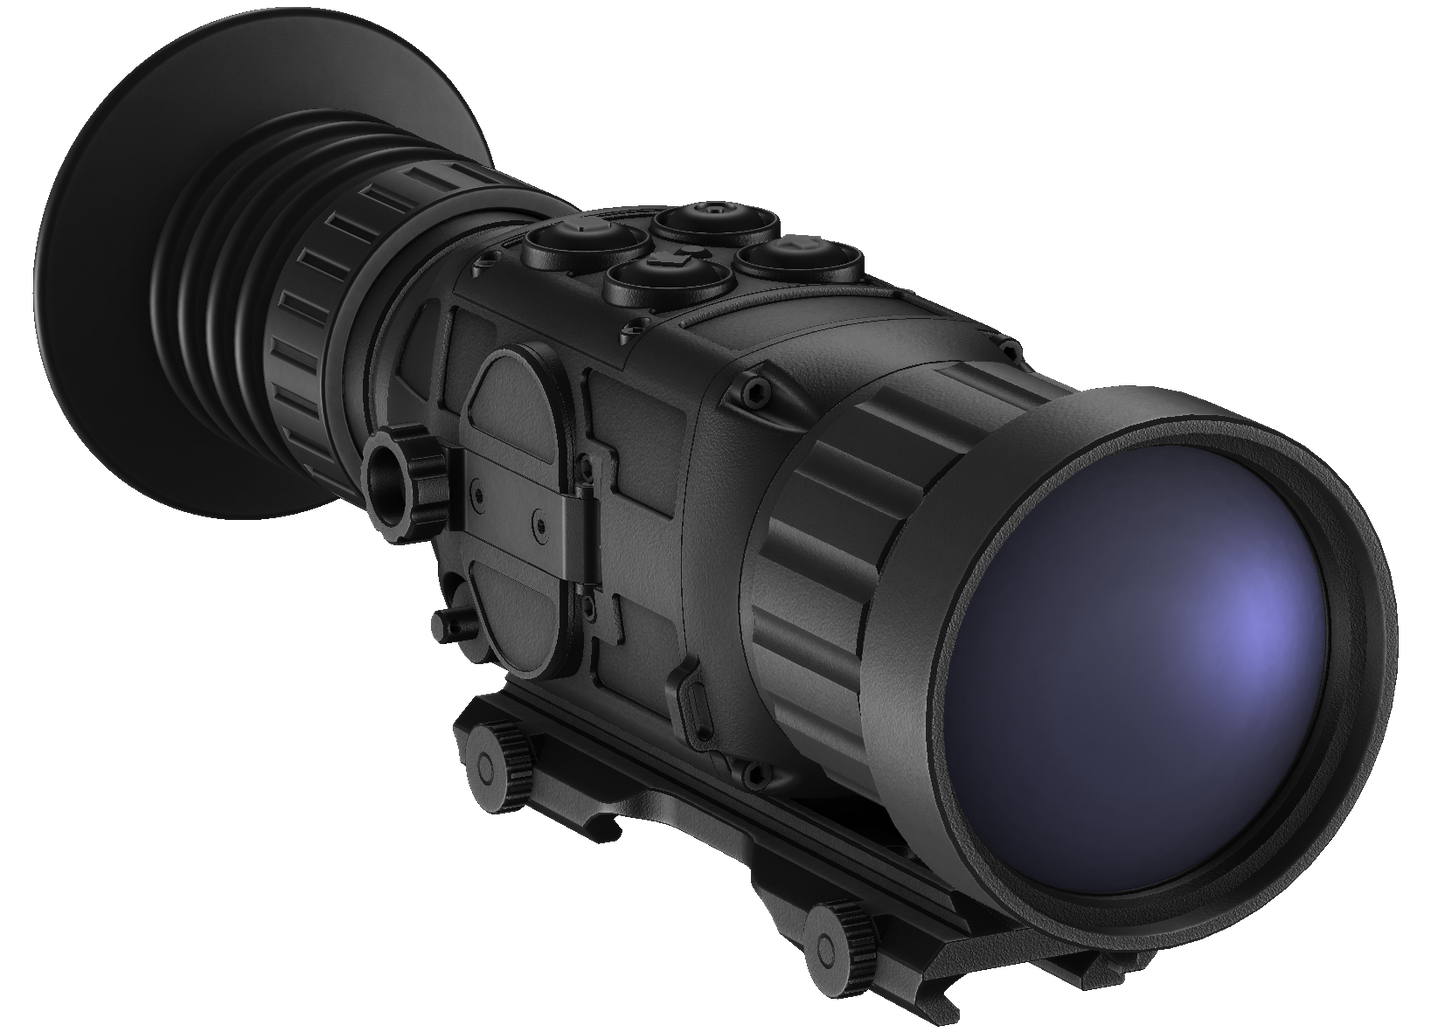 TI-GEAR-M350F Multi-Purpose Thermal Monocular